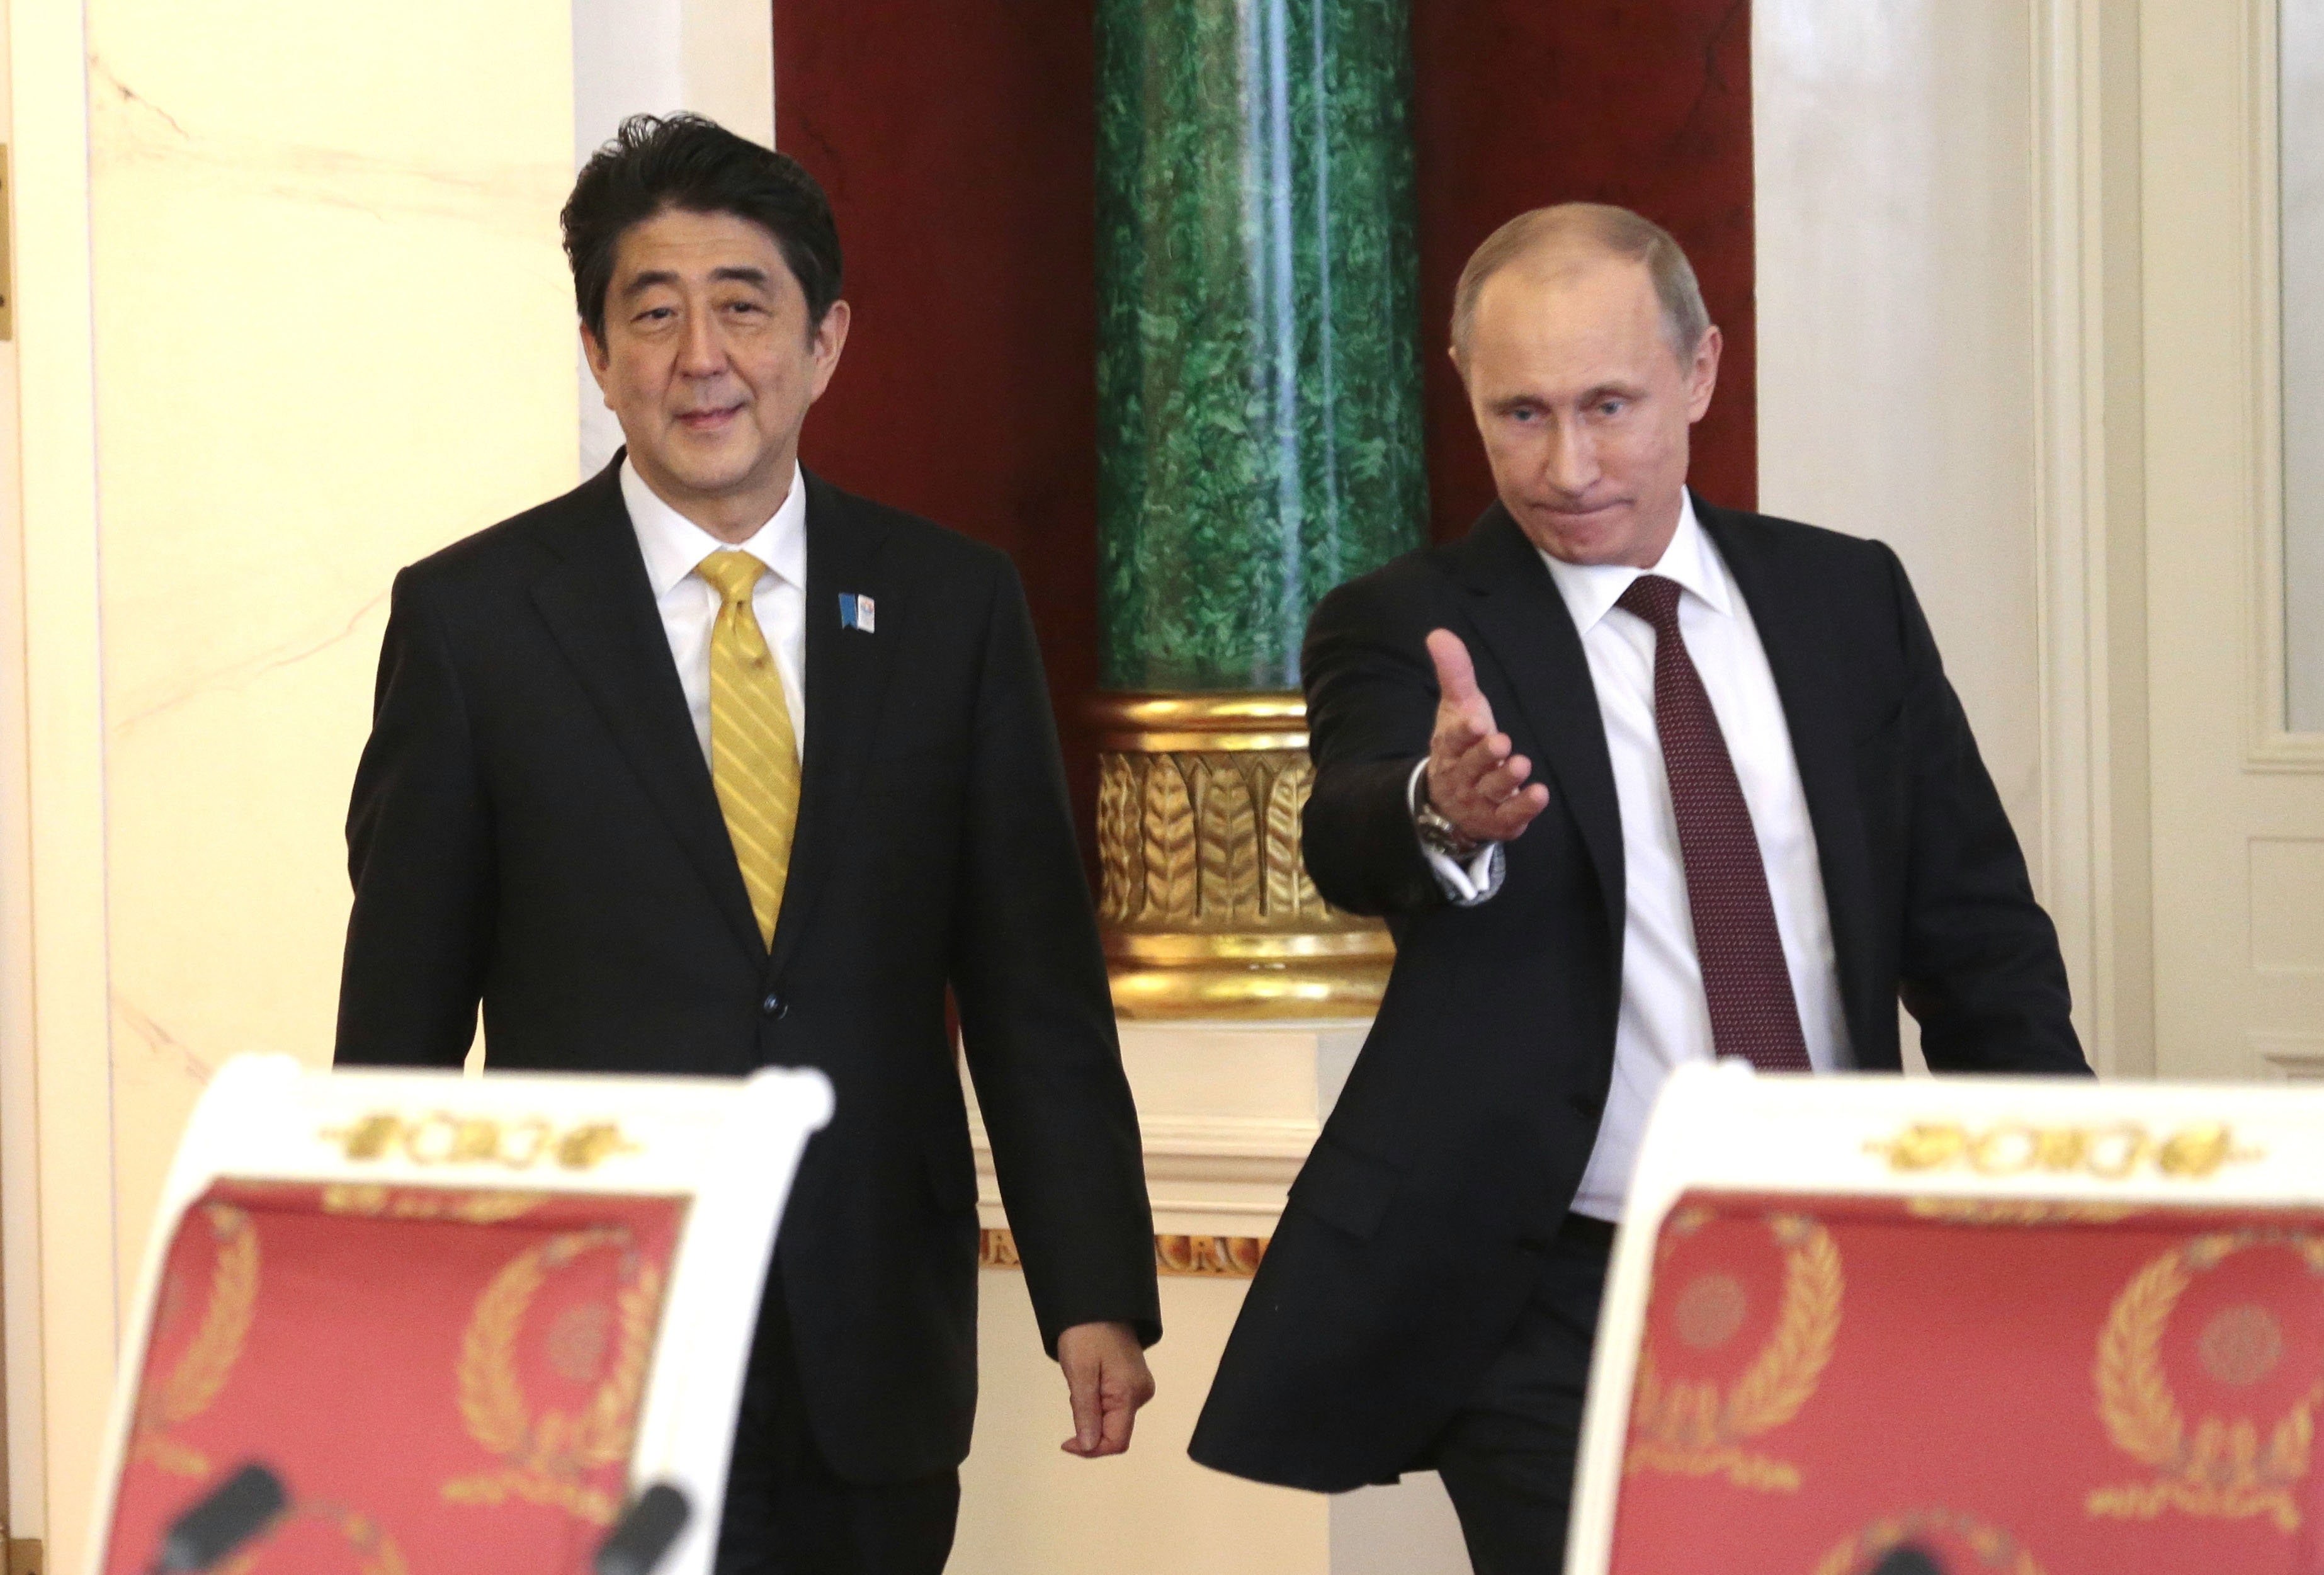 Putin and Abe